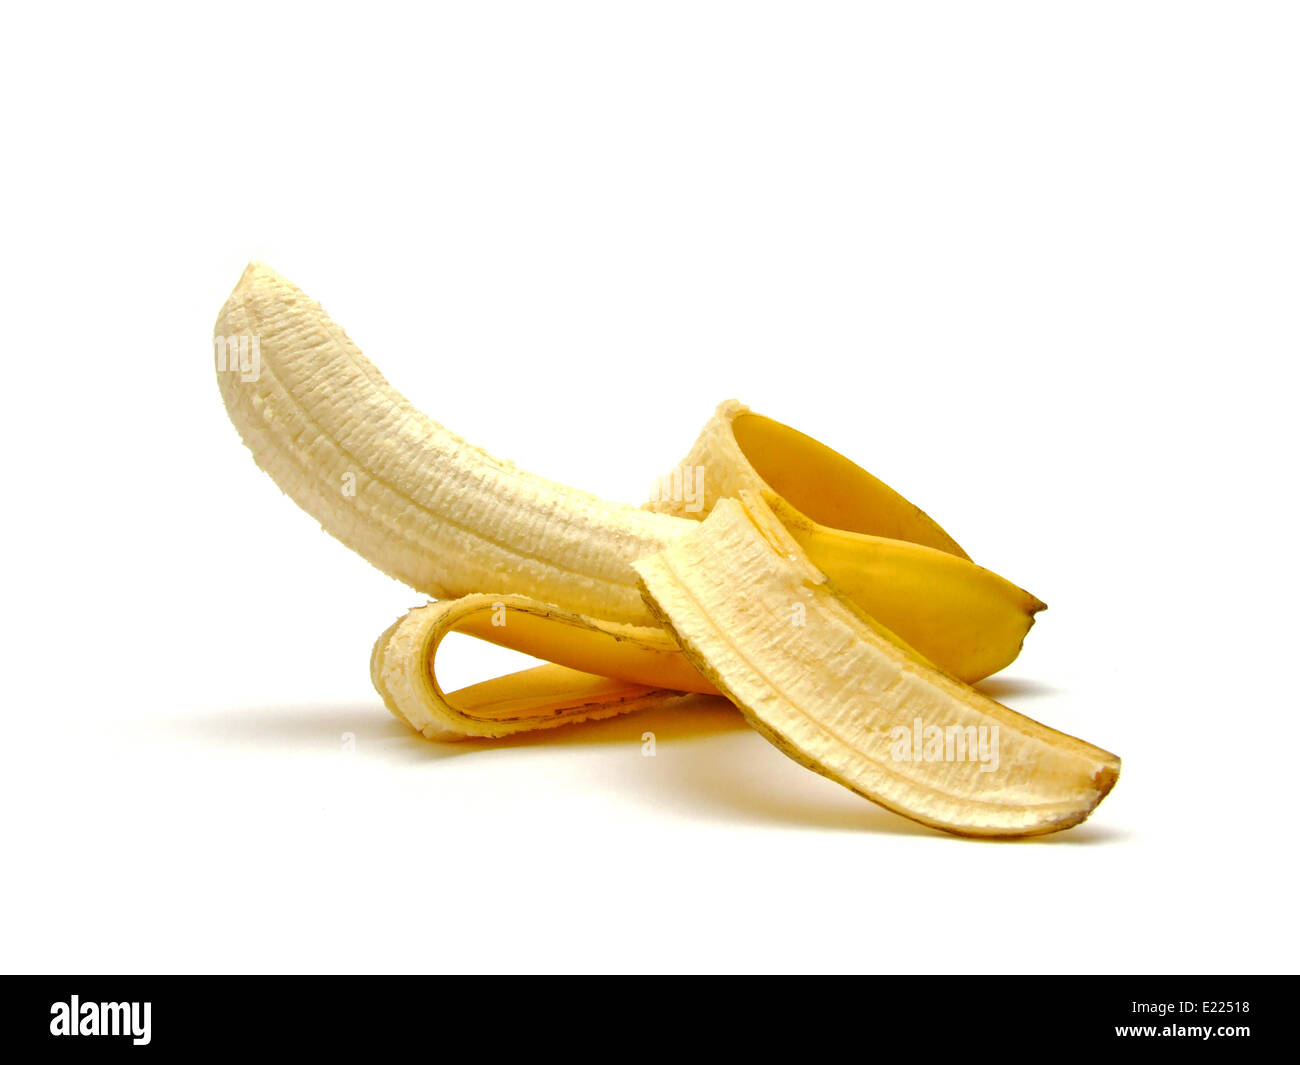 peeled banana Stock Photo